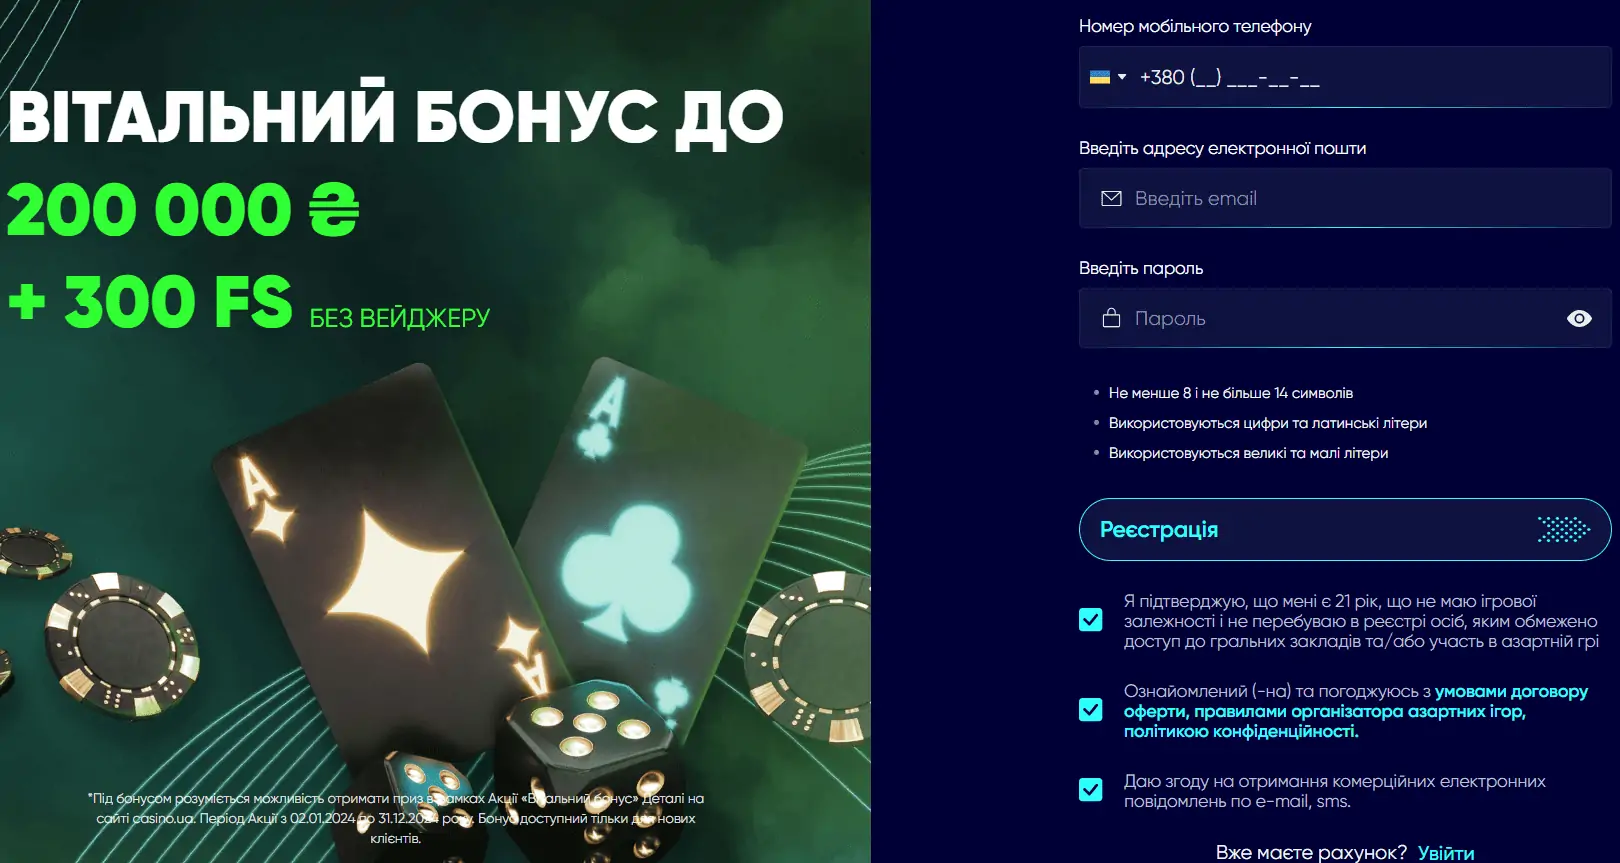 Казино юа (Casino.ua) - автомати, огляд, реєстрація